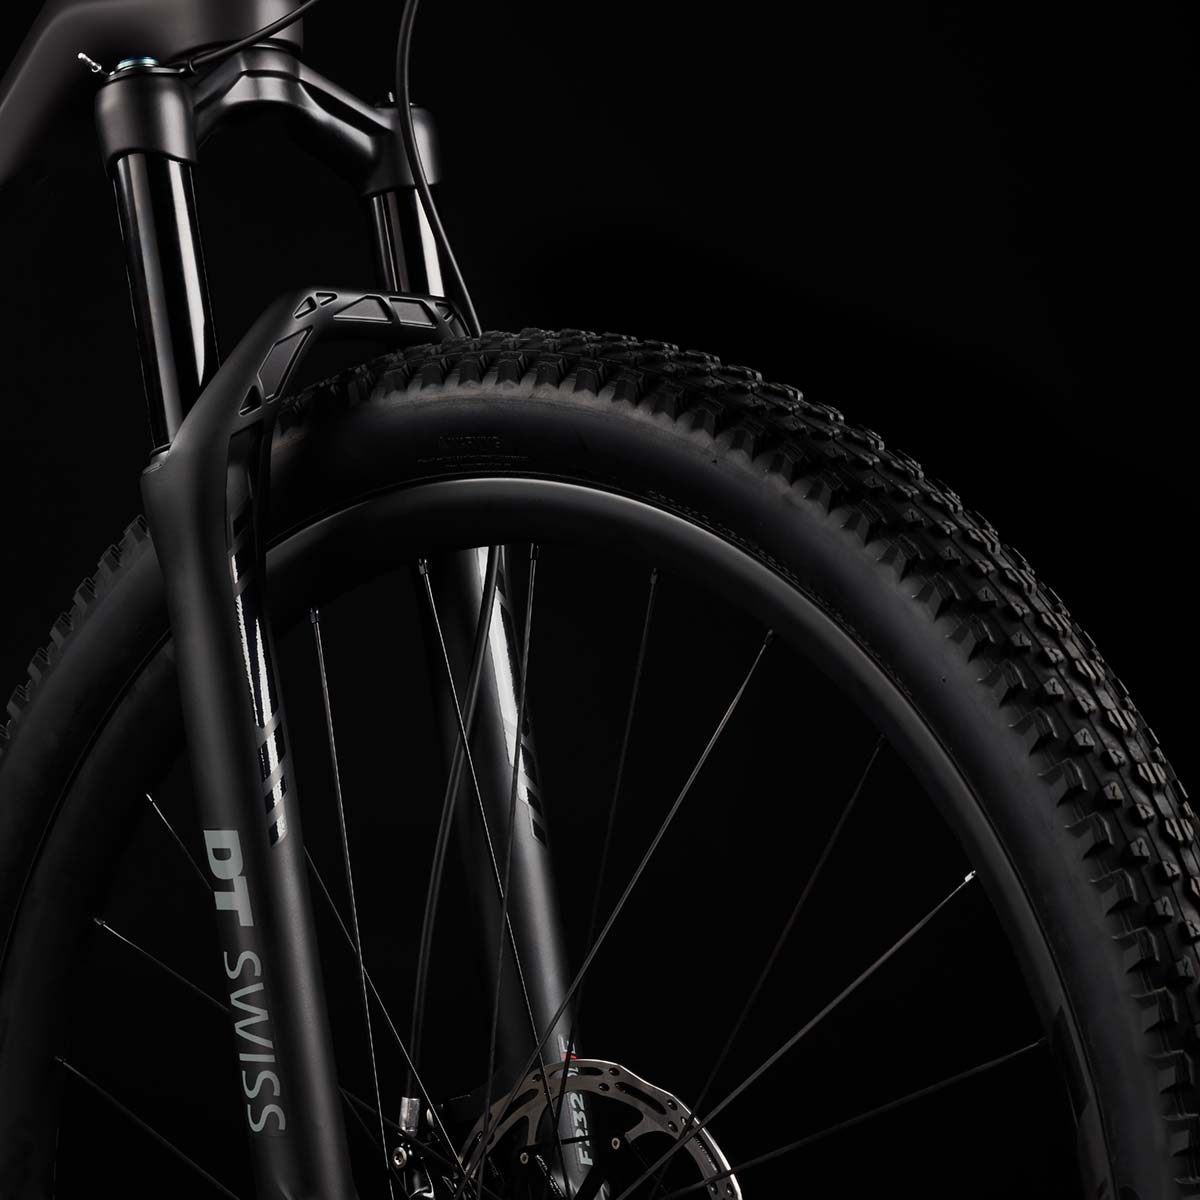 En TodoMountainBike: Canyon Bicycles y DT Swiss se asocian para lanzar la edición limitada Lux CF SLX 9.0 DT LTD